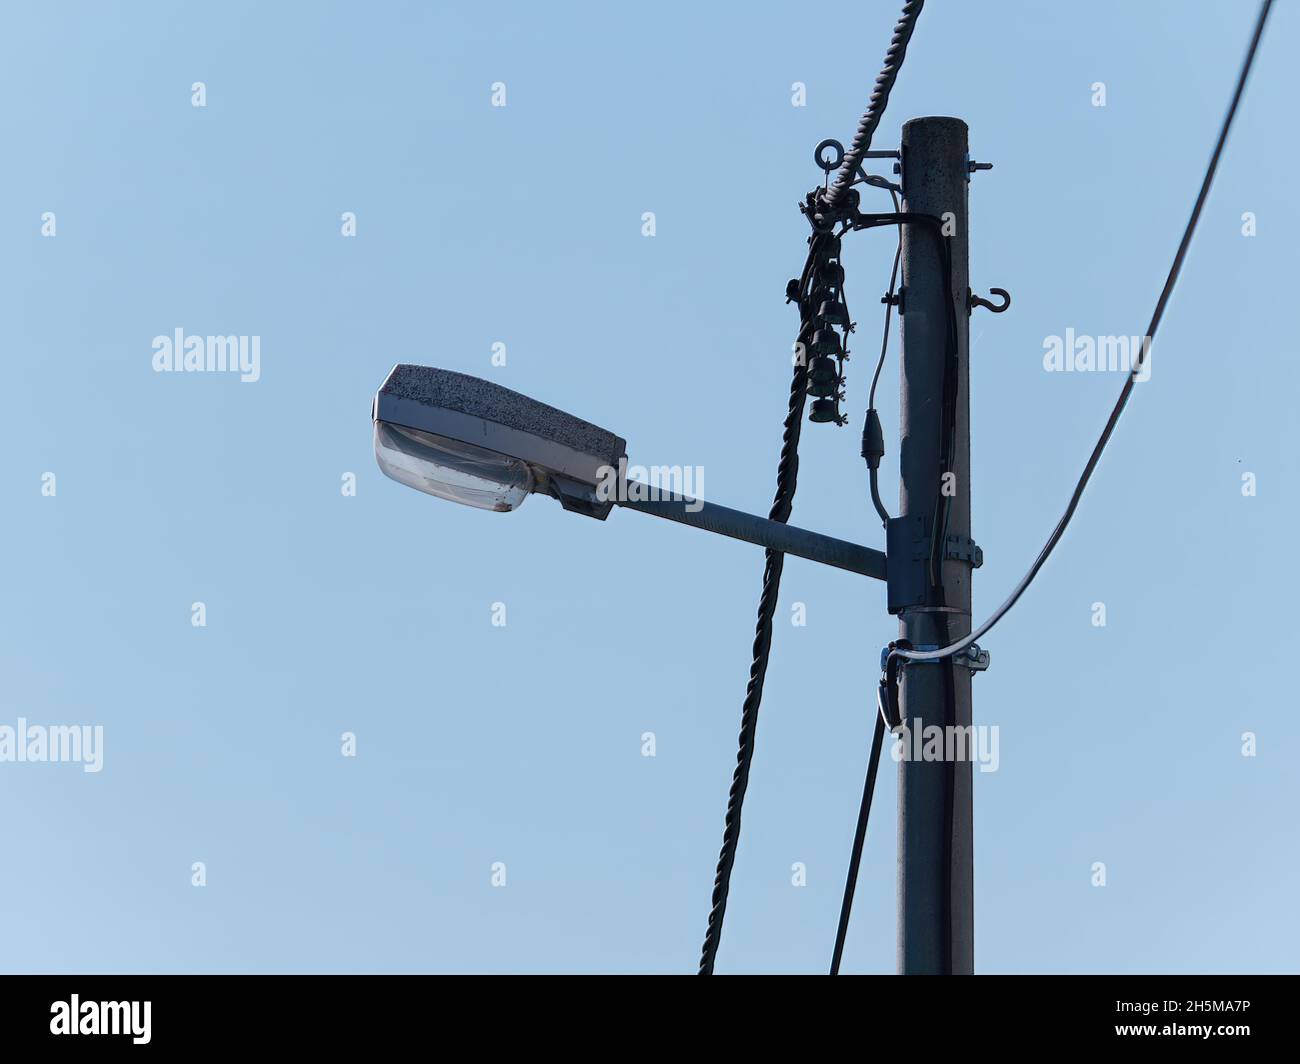 Luci per la circolazione su strada attaccate a un palo contro un cielo blu durante il giorno Foto Stock